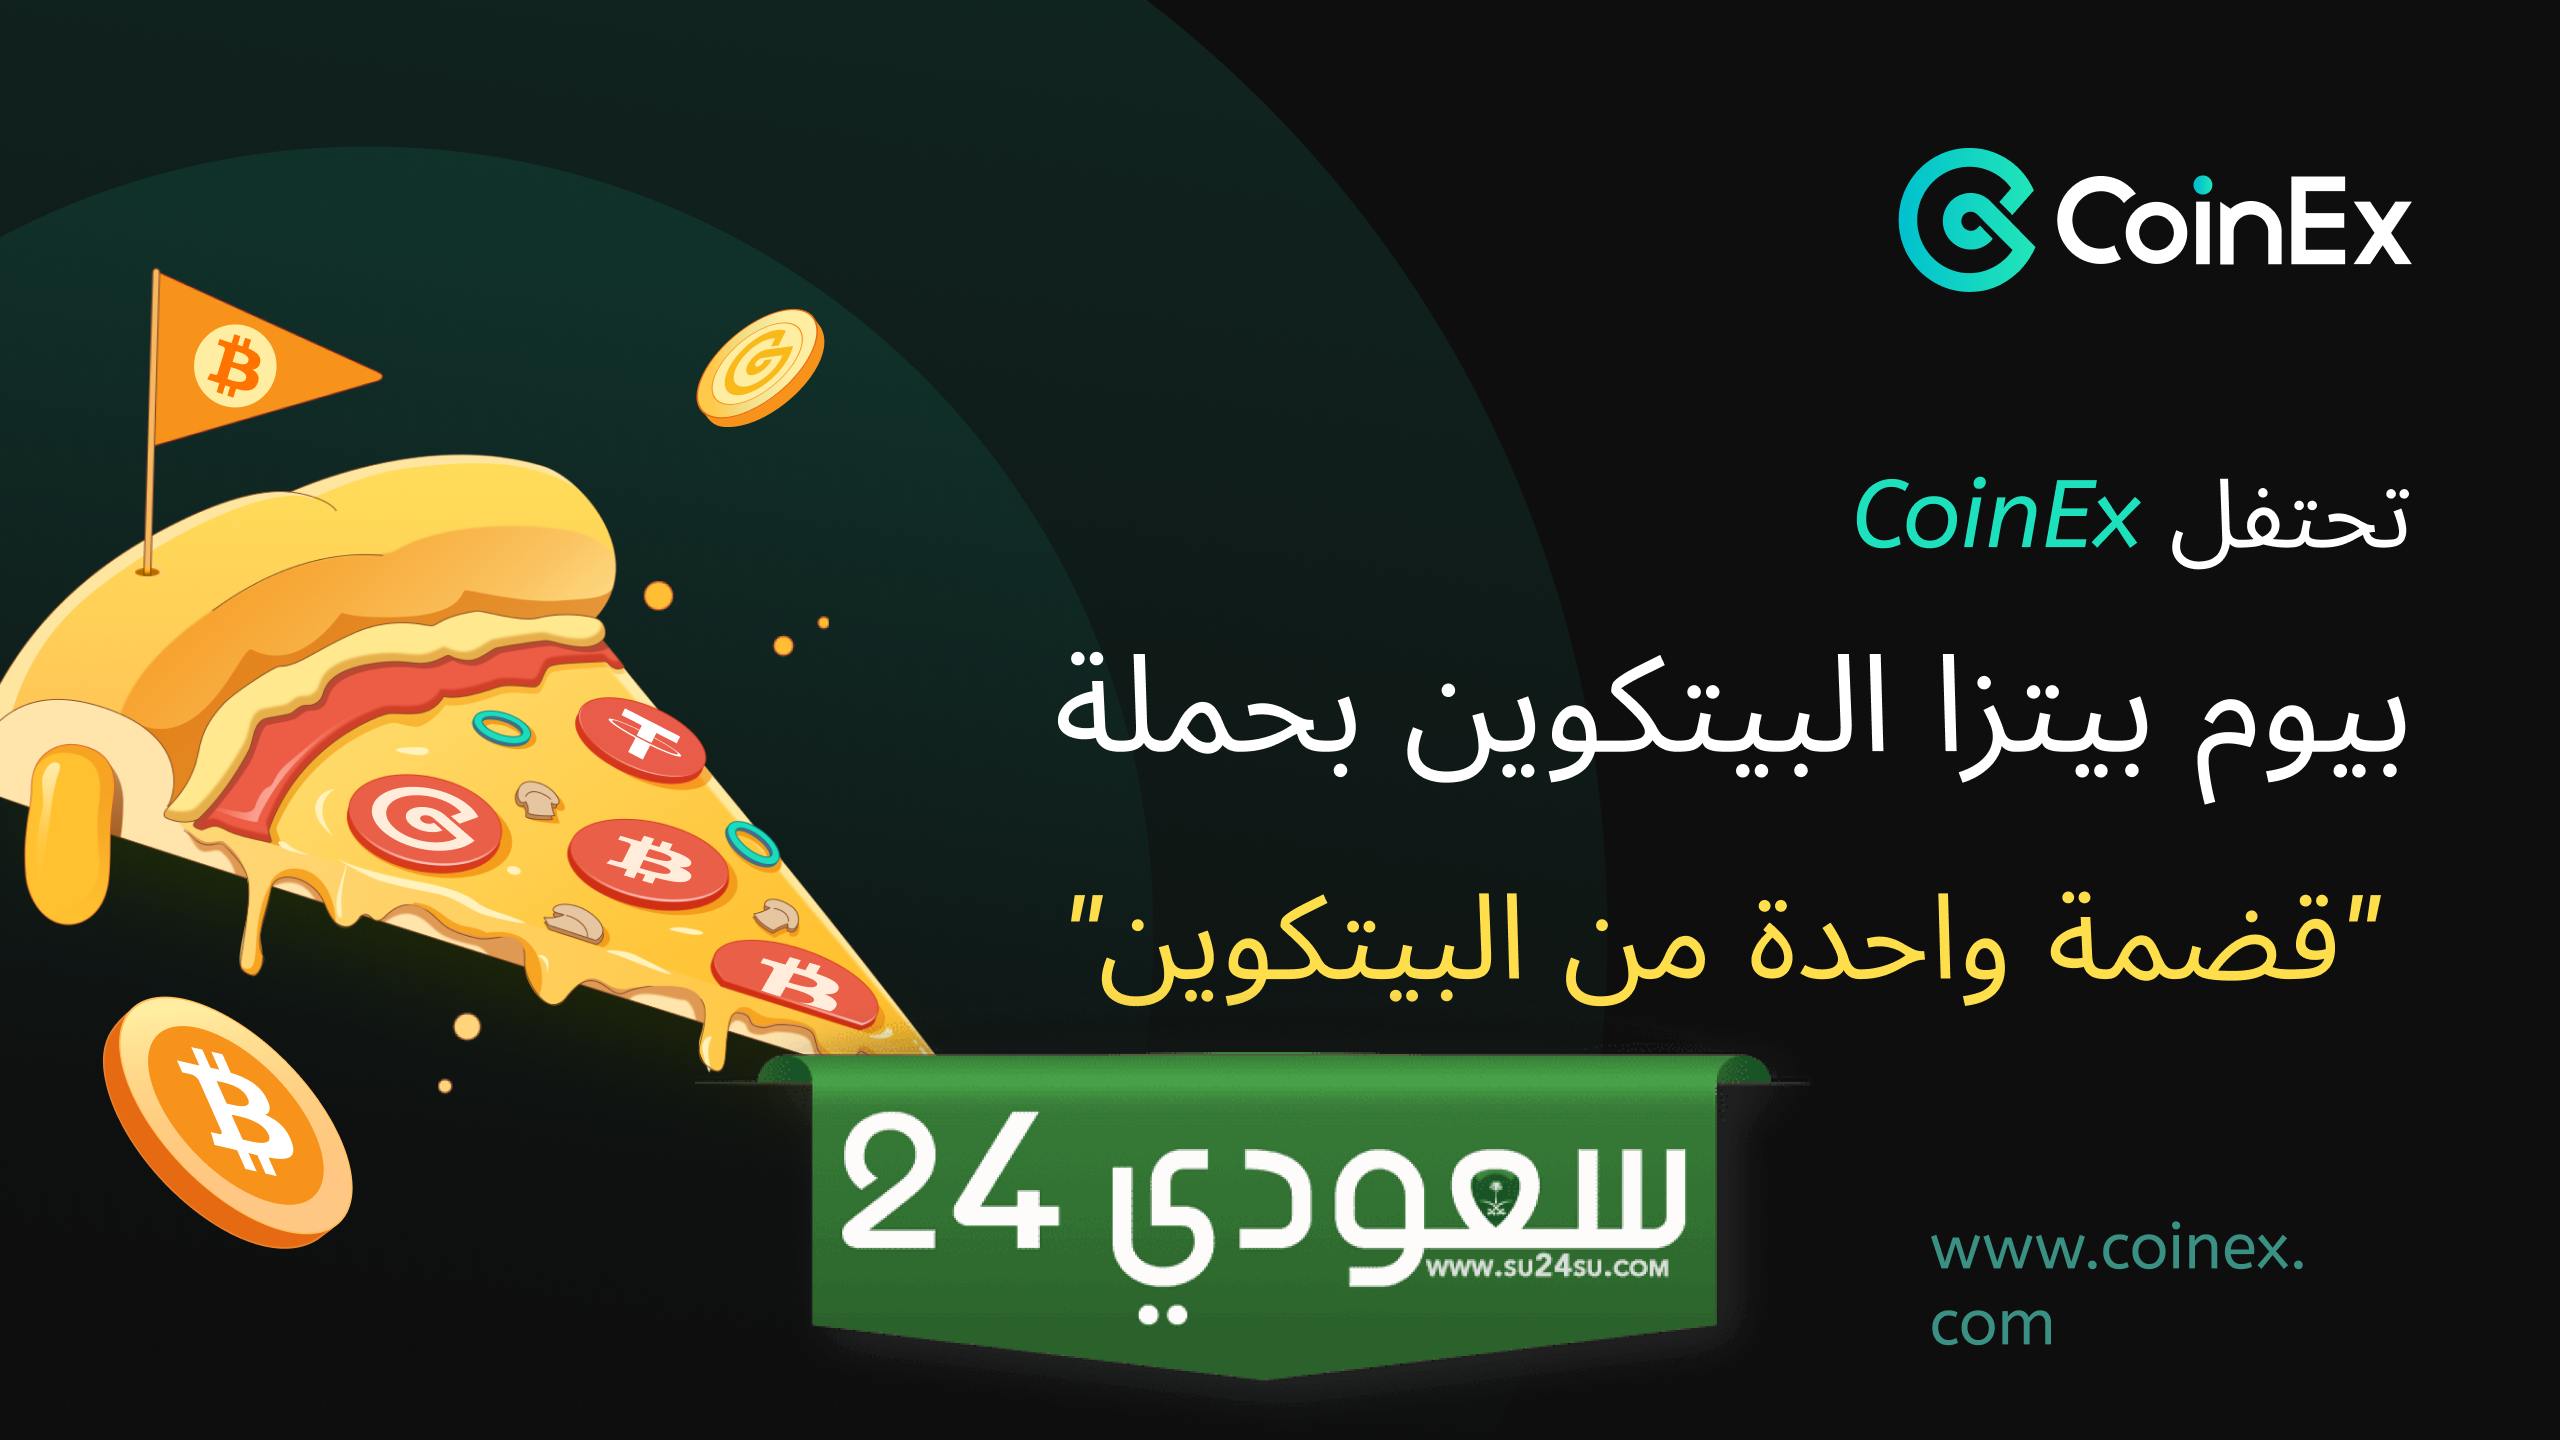 بورصة كوين إكس CoinEx تحتفل بيوم بيتزا البيتكوين بحملة “قضمة واحدة من البيتكوين”